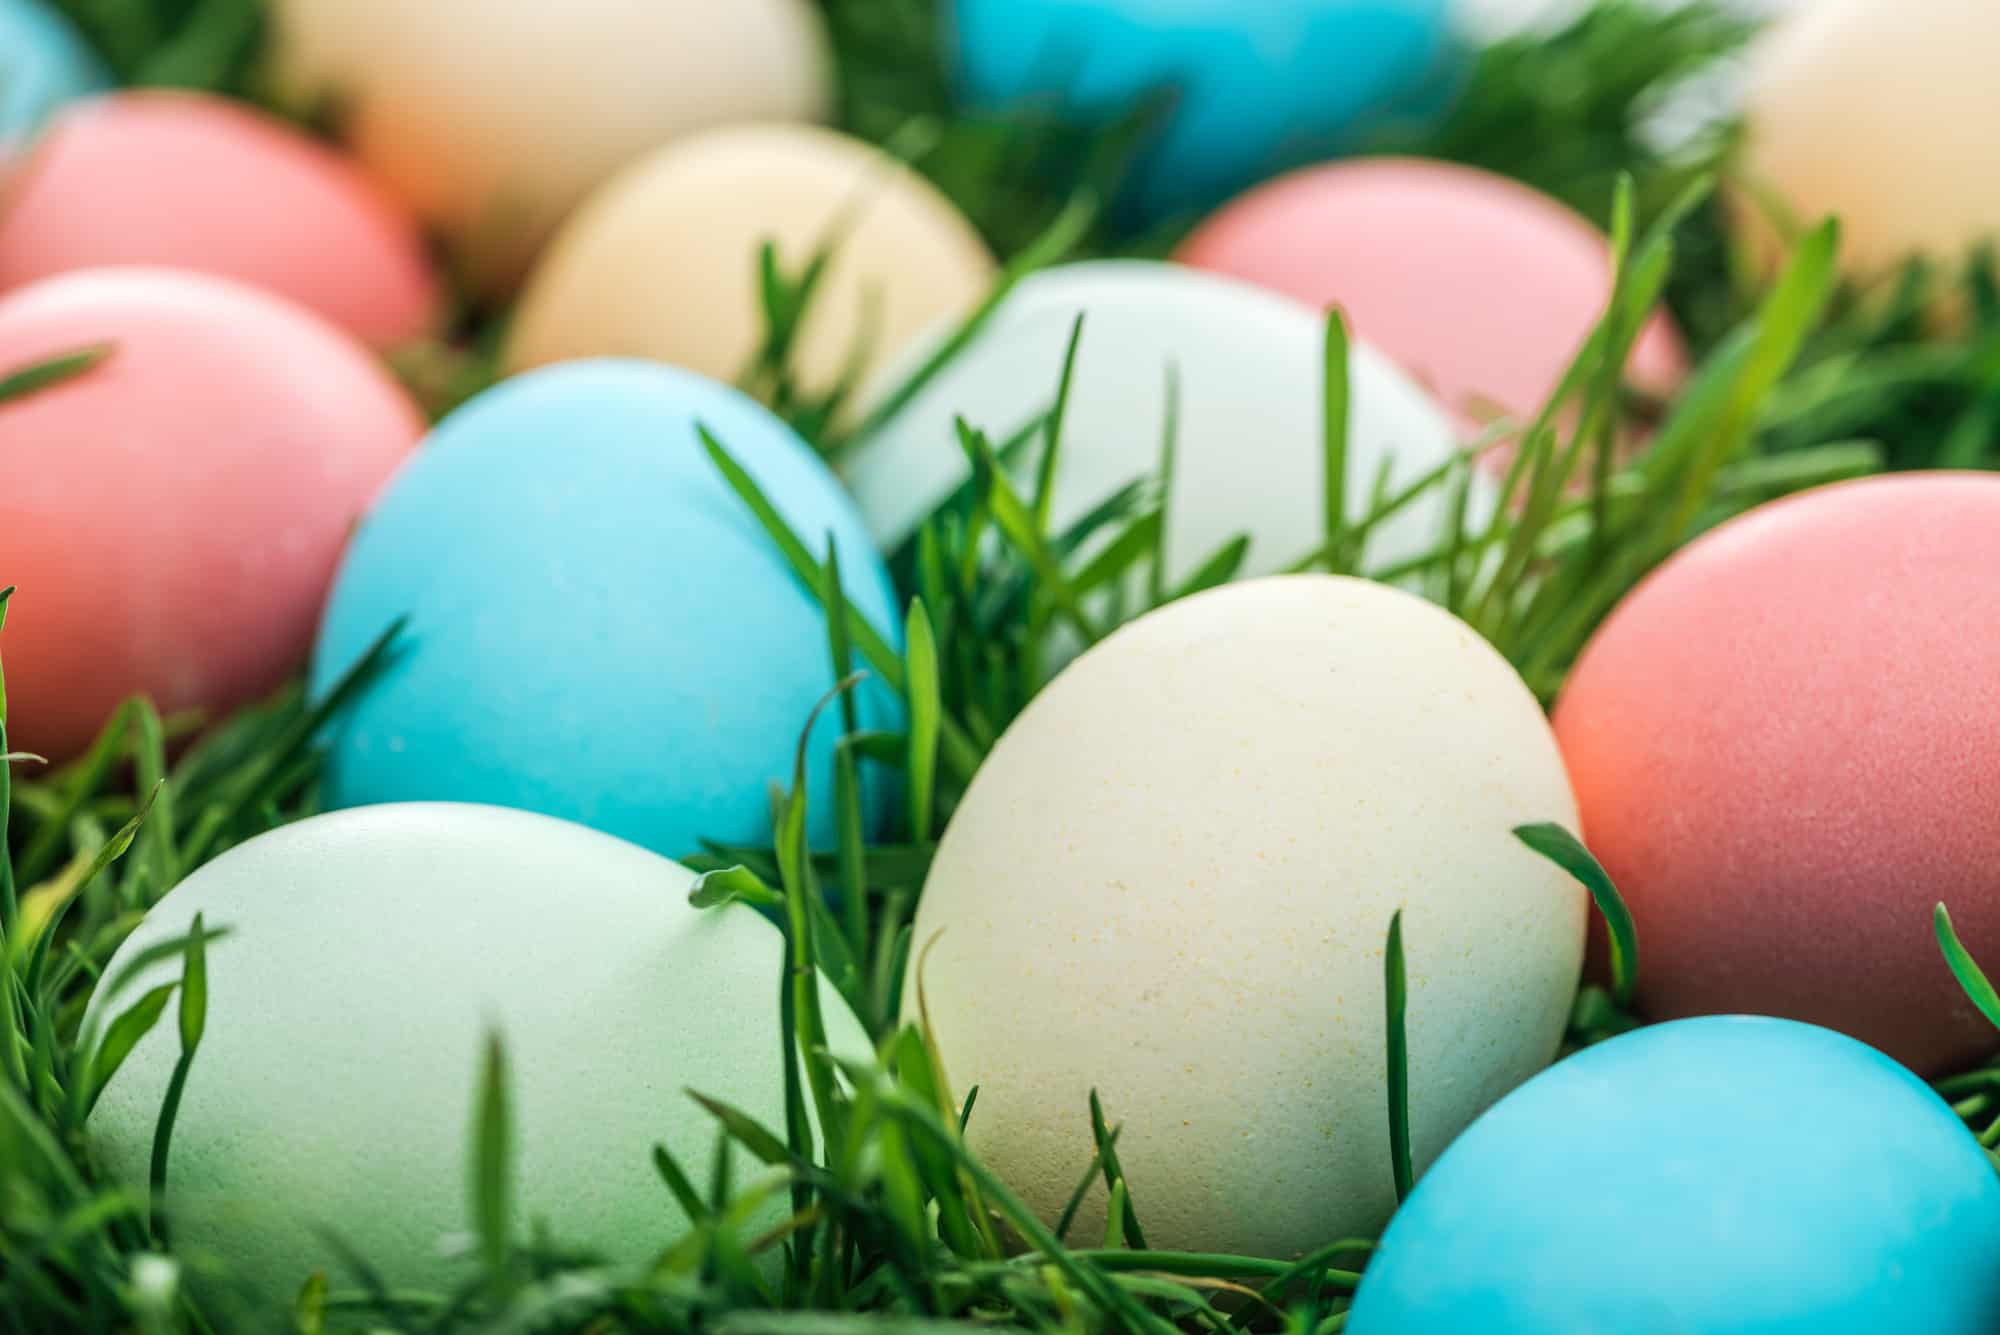 Vibrant Easter eggs nestled in the grass.